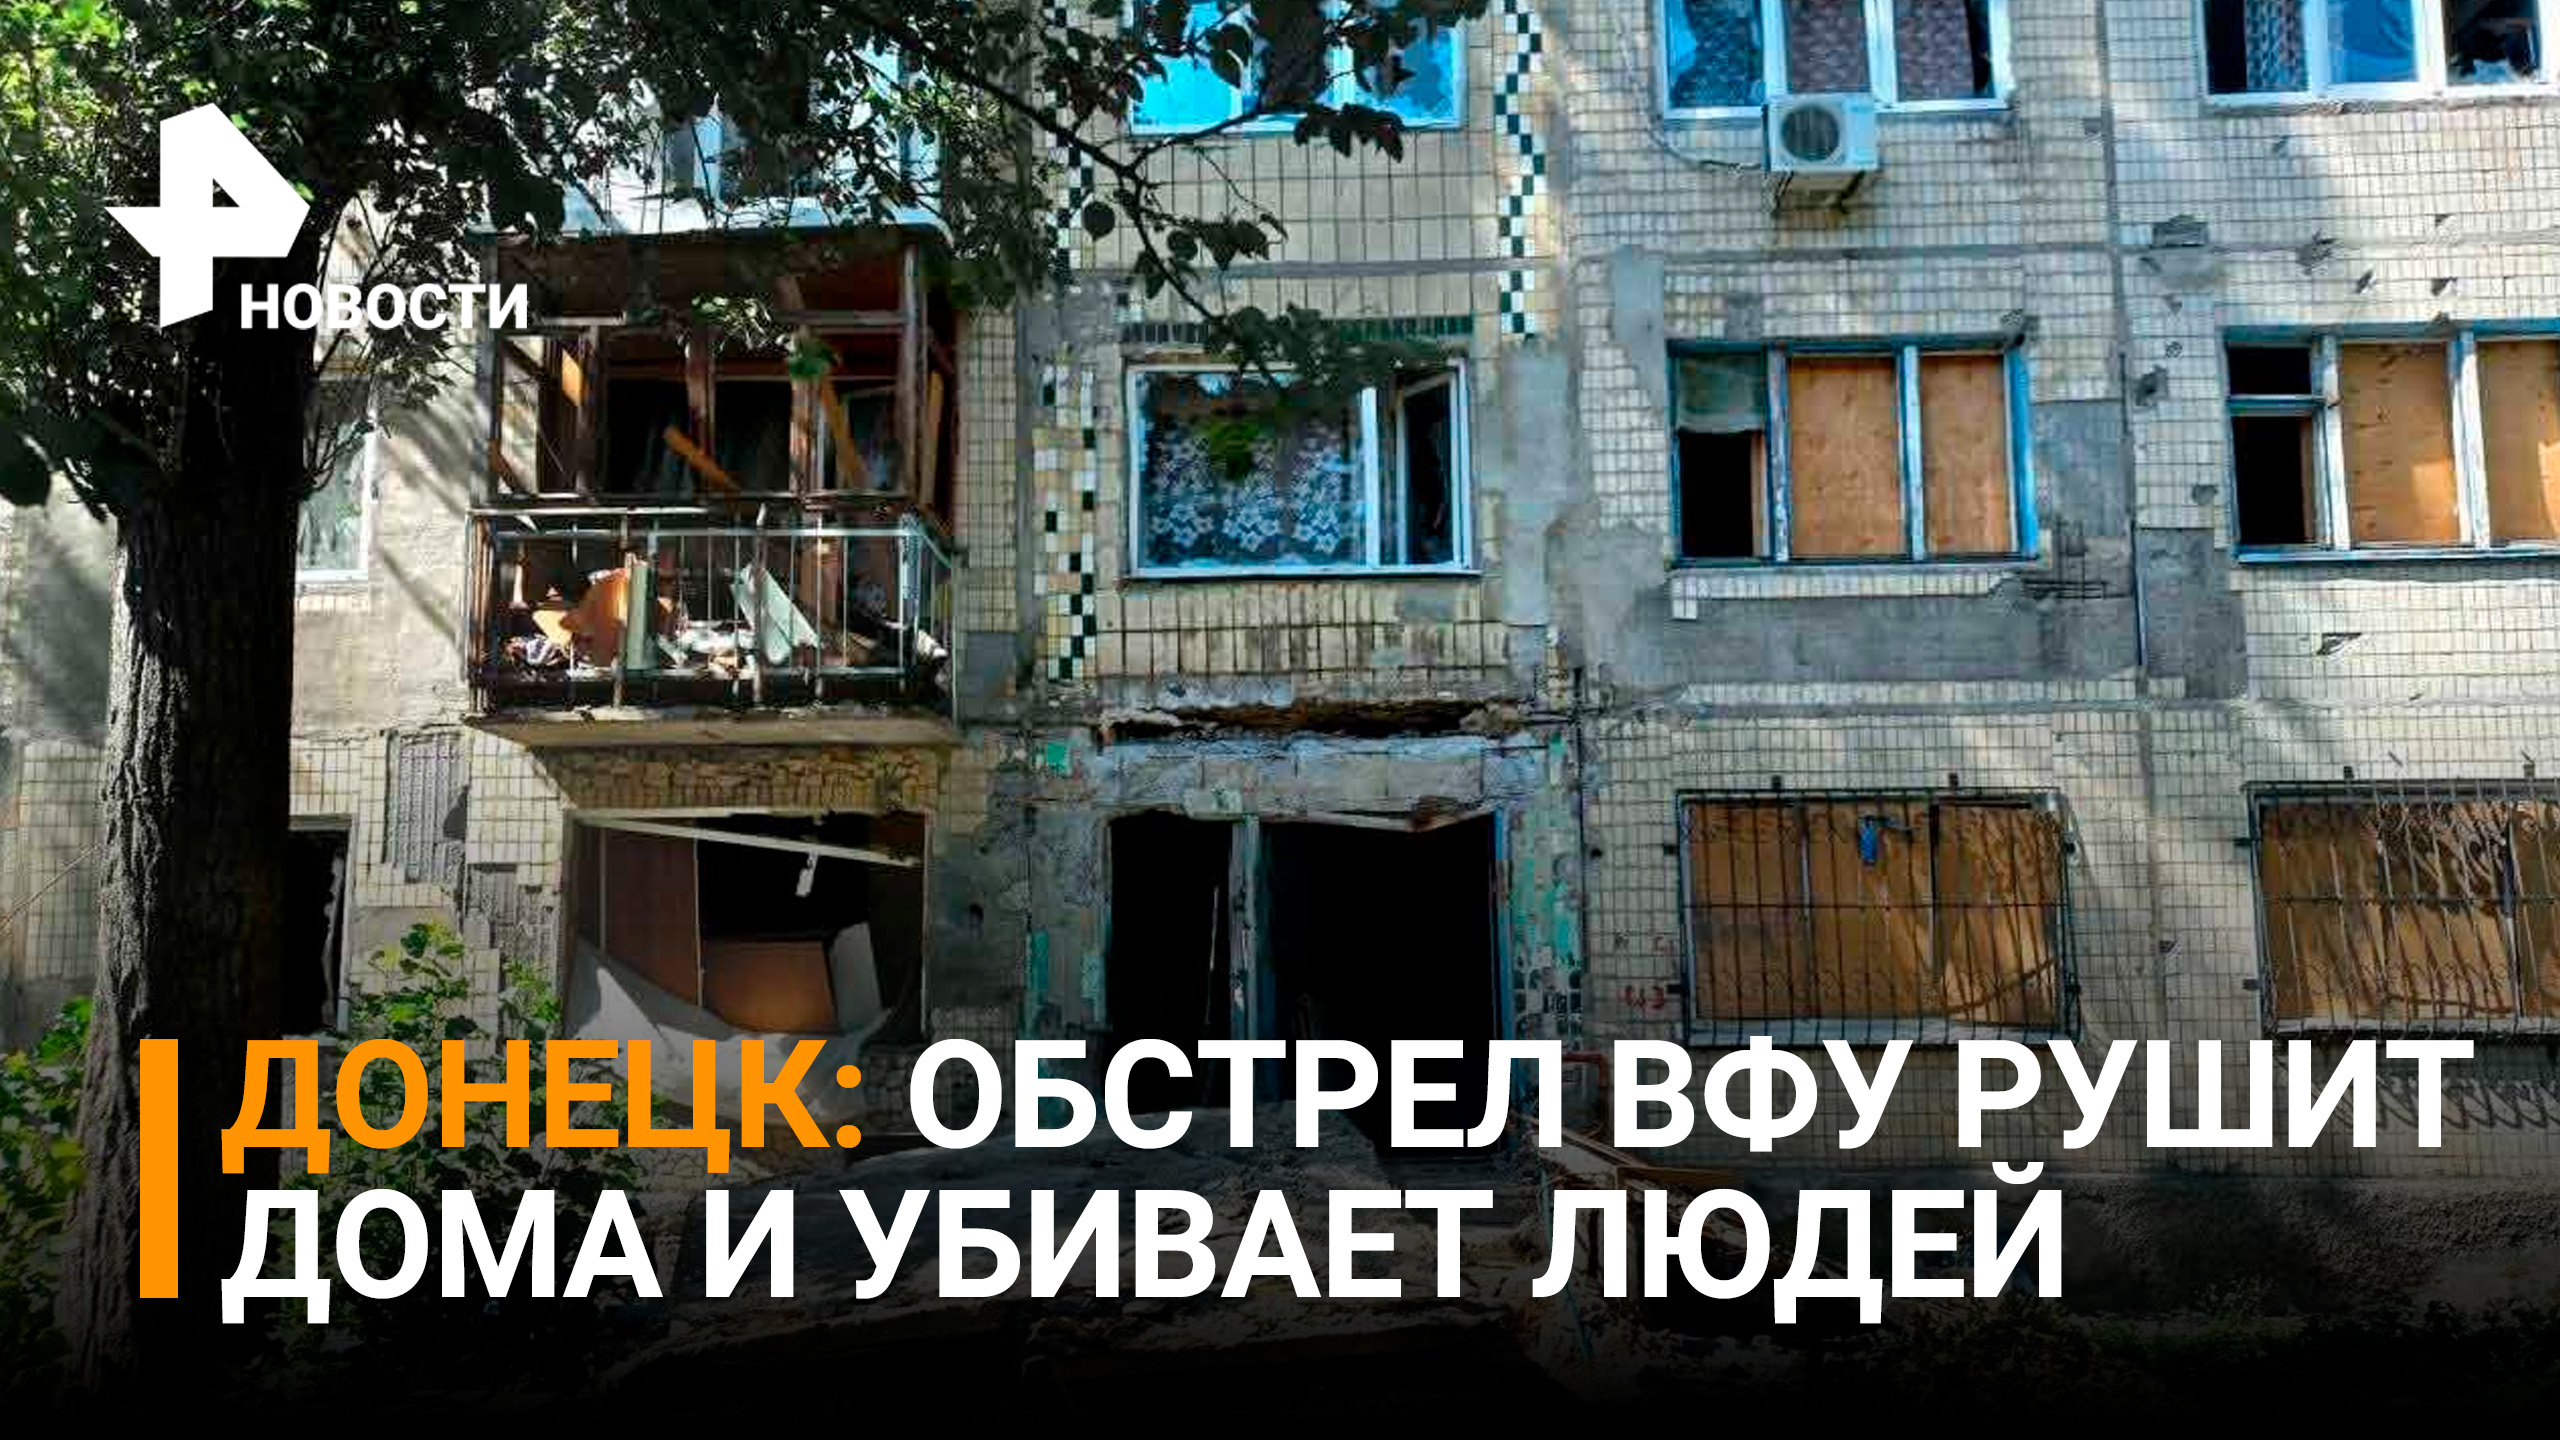 ВСУ обстреливают  Донецк: есть жертвы среди мирных жителей / РЕН Новости